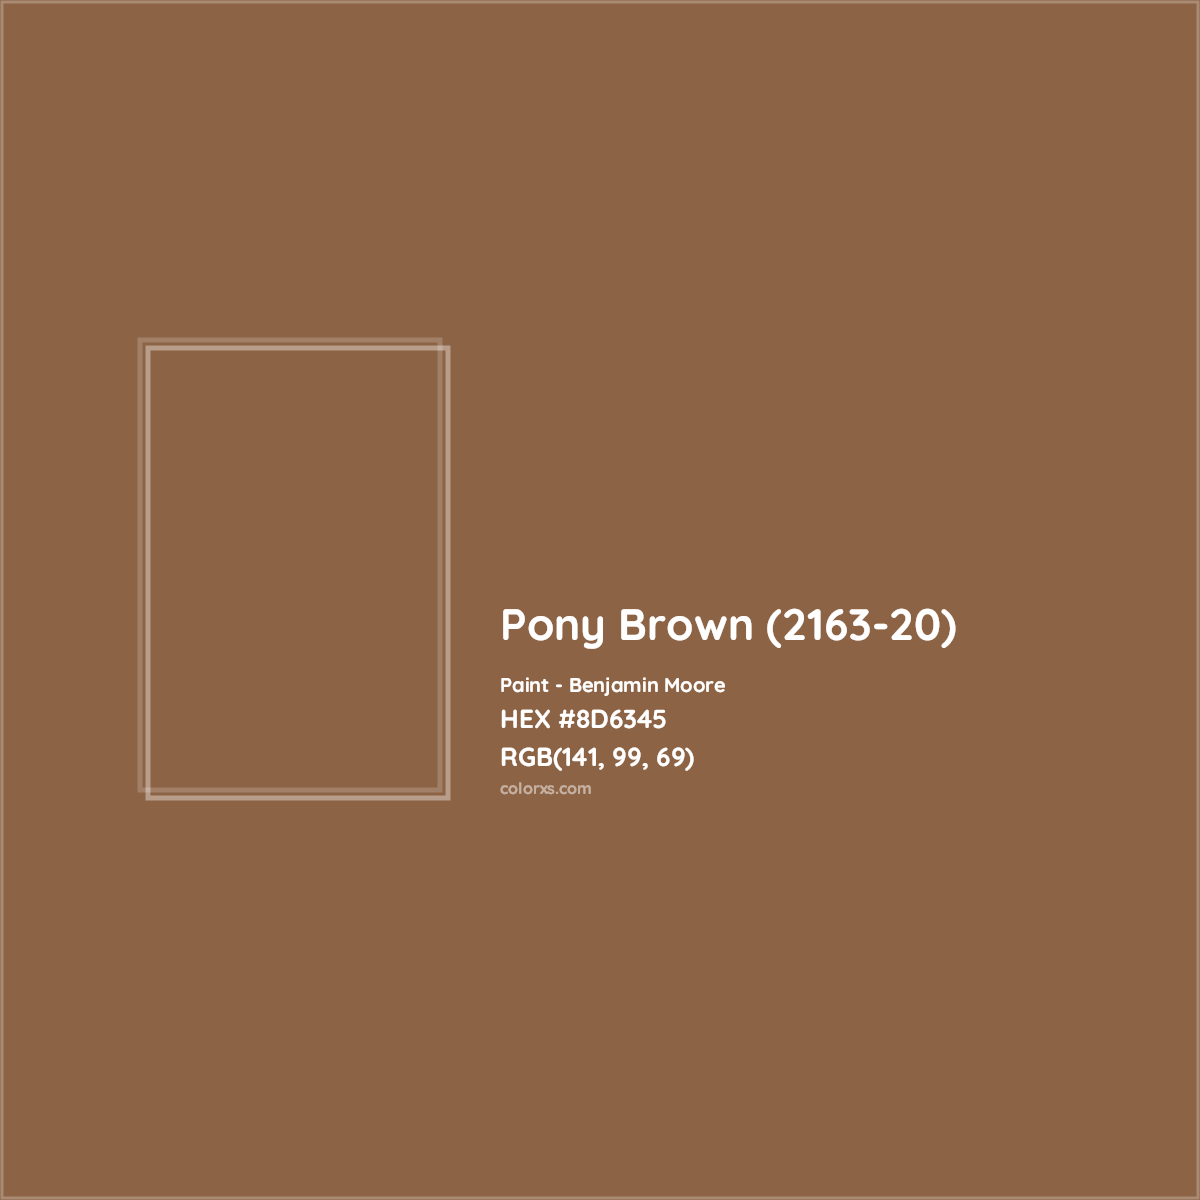 HEX #8D6345 Pony Brown (2163-20) Paint Benjamin Moore - Color Code